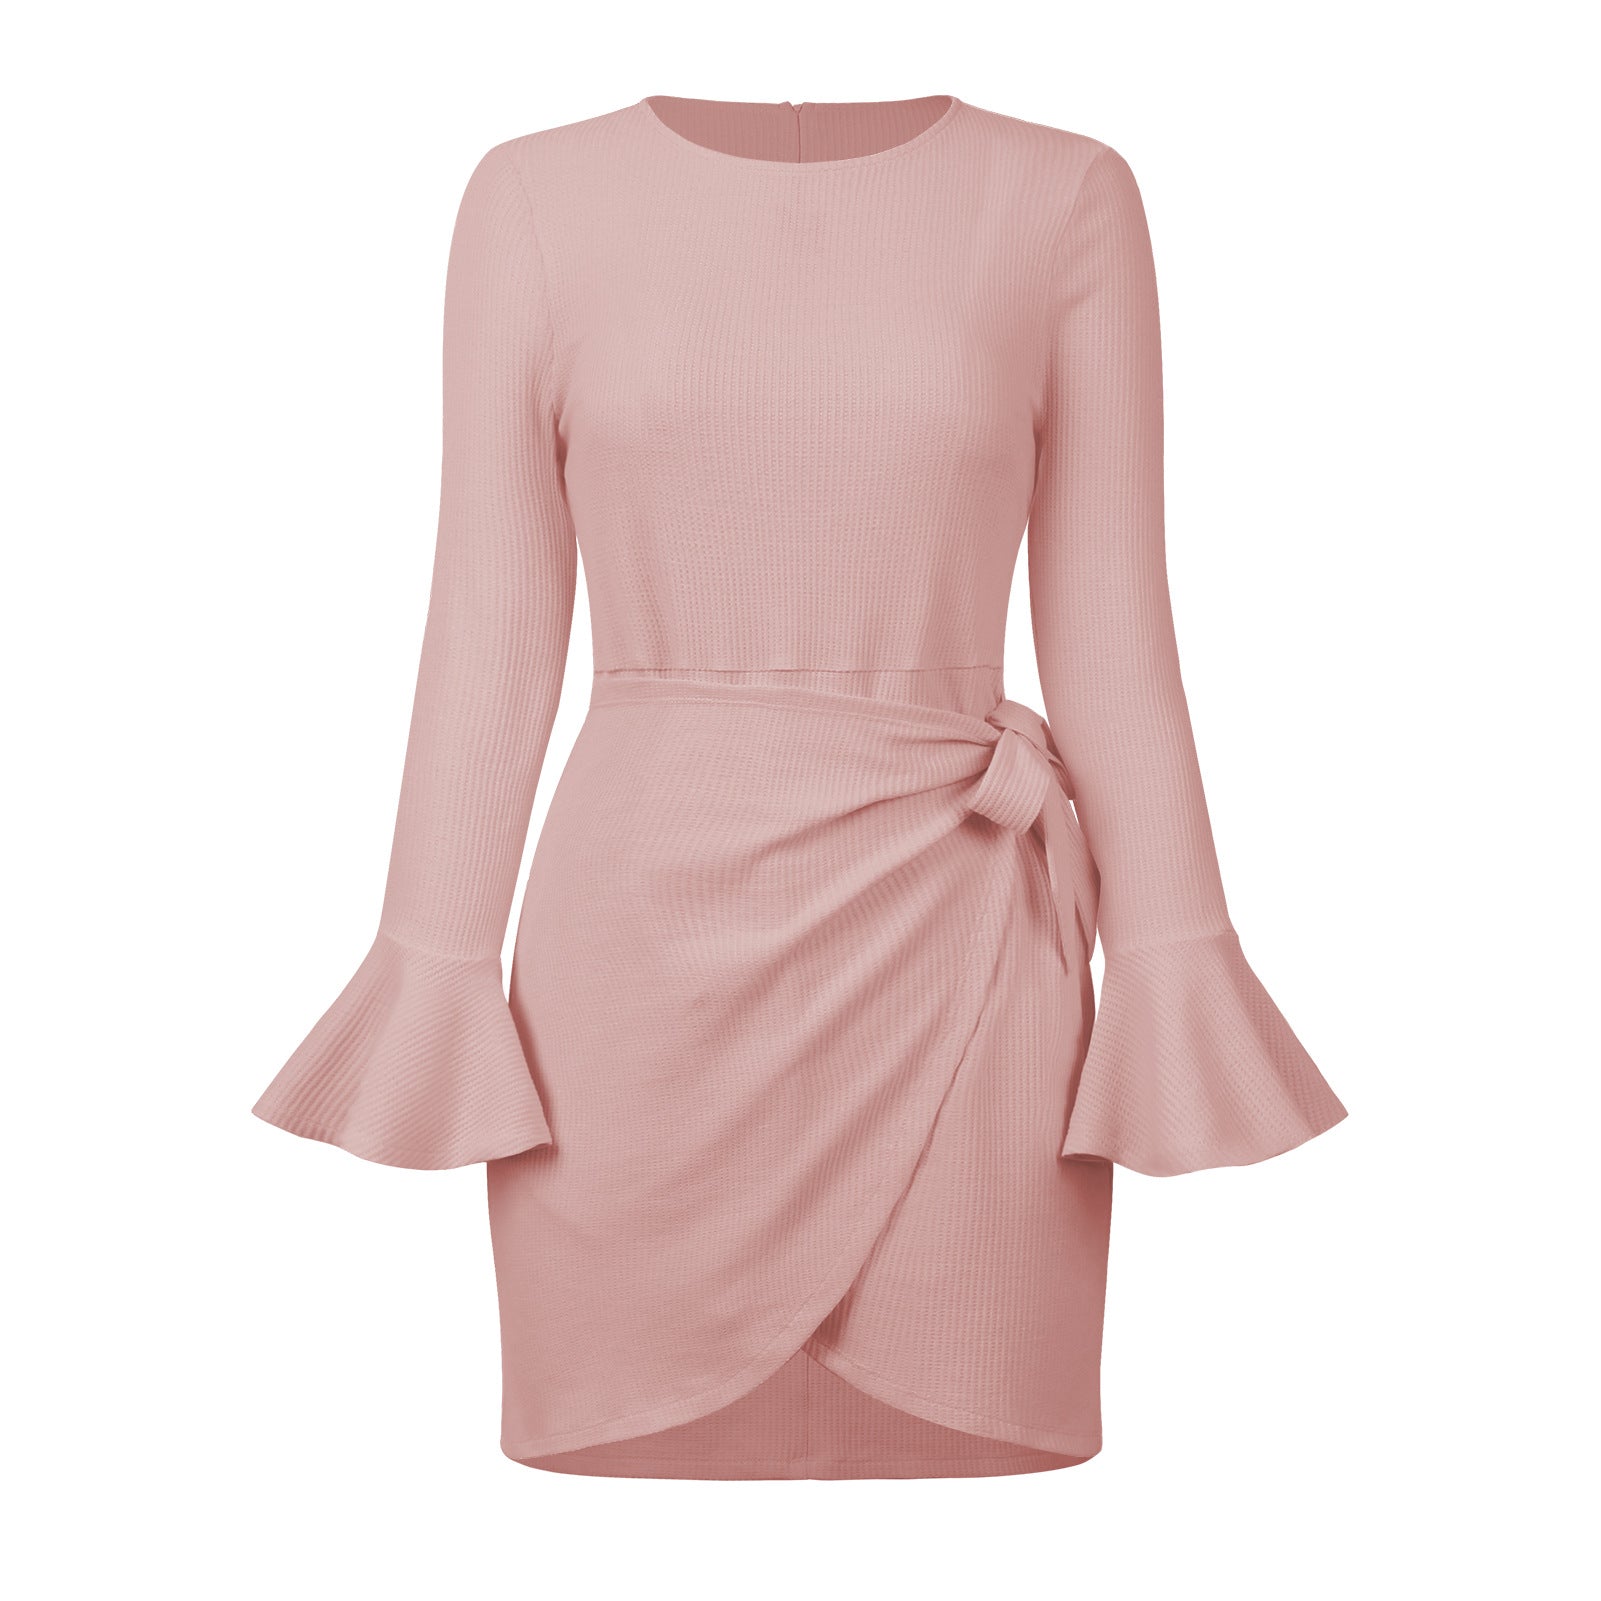 2022 Autumn And Winter Women's New Hot-selling Bell Sleeve High Waist Skirt Waffle Strap Dress Long Sleeve Skirt